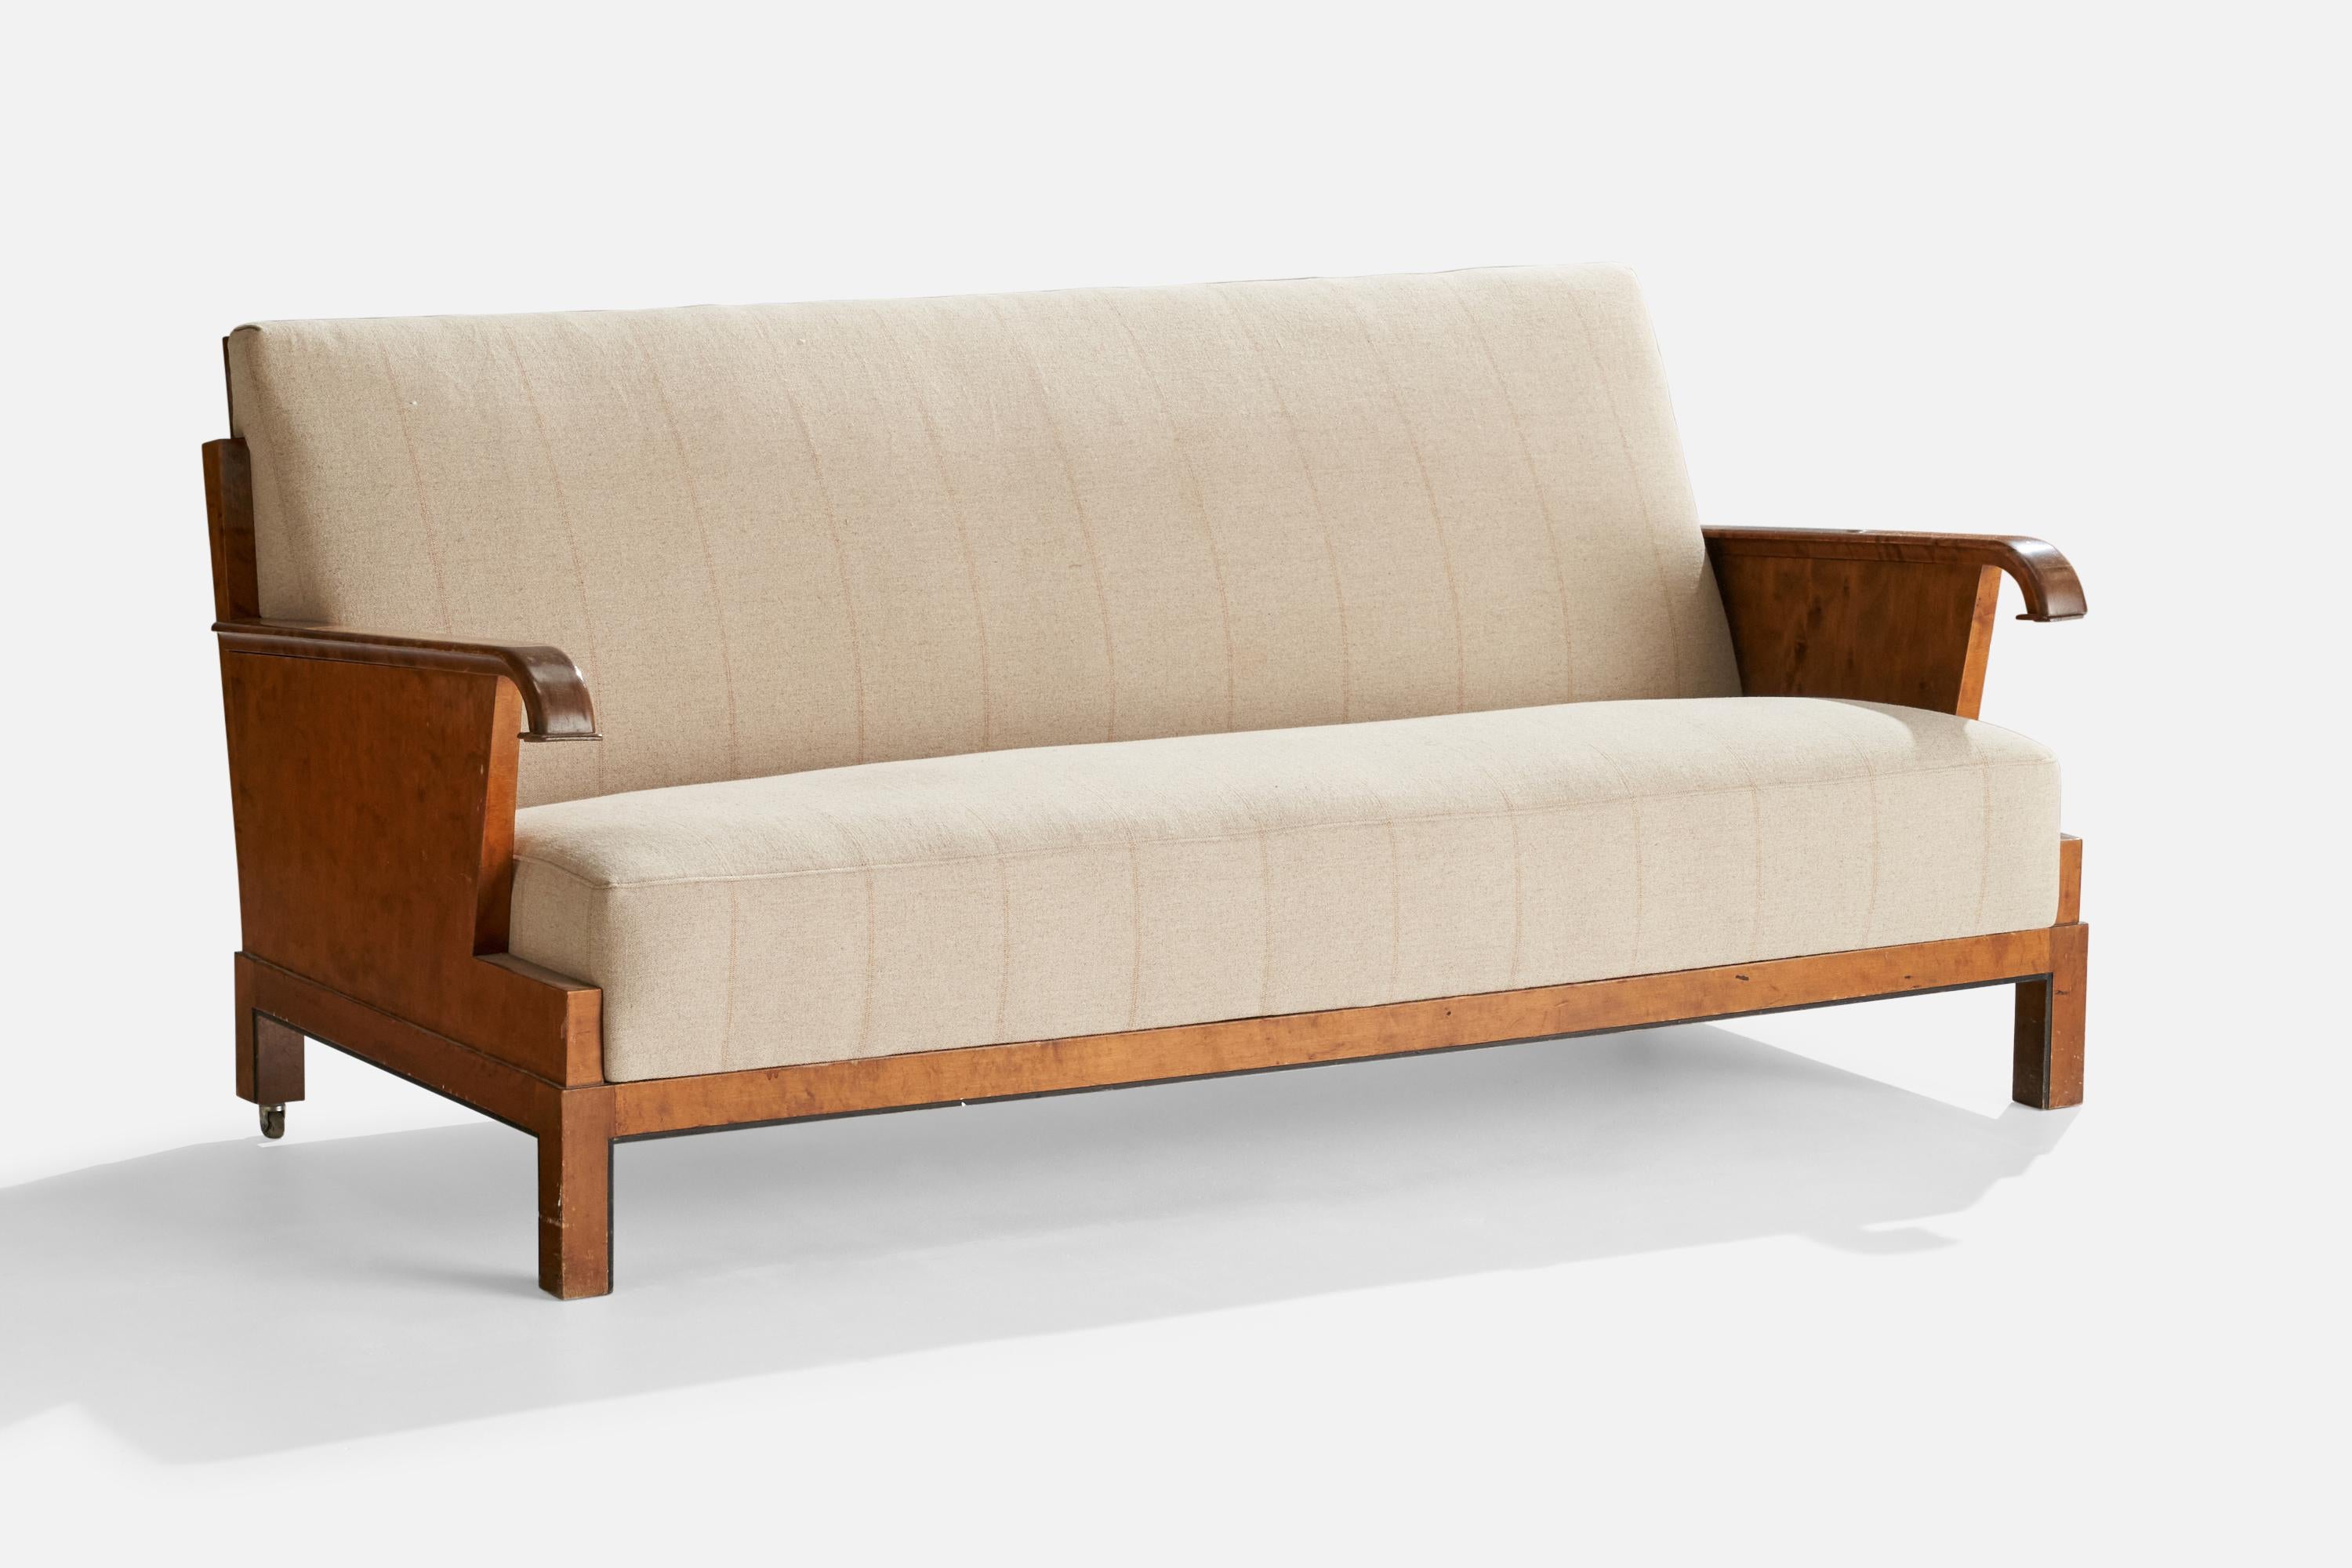 Ein Sofa aus Birke, cremefarbenem Stoff und Metall, entworfen in Finnland, 1930er Jahre.

Sitzhöhe 16